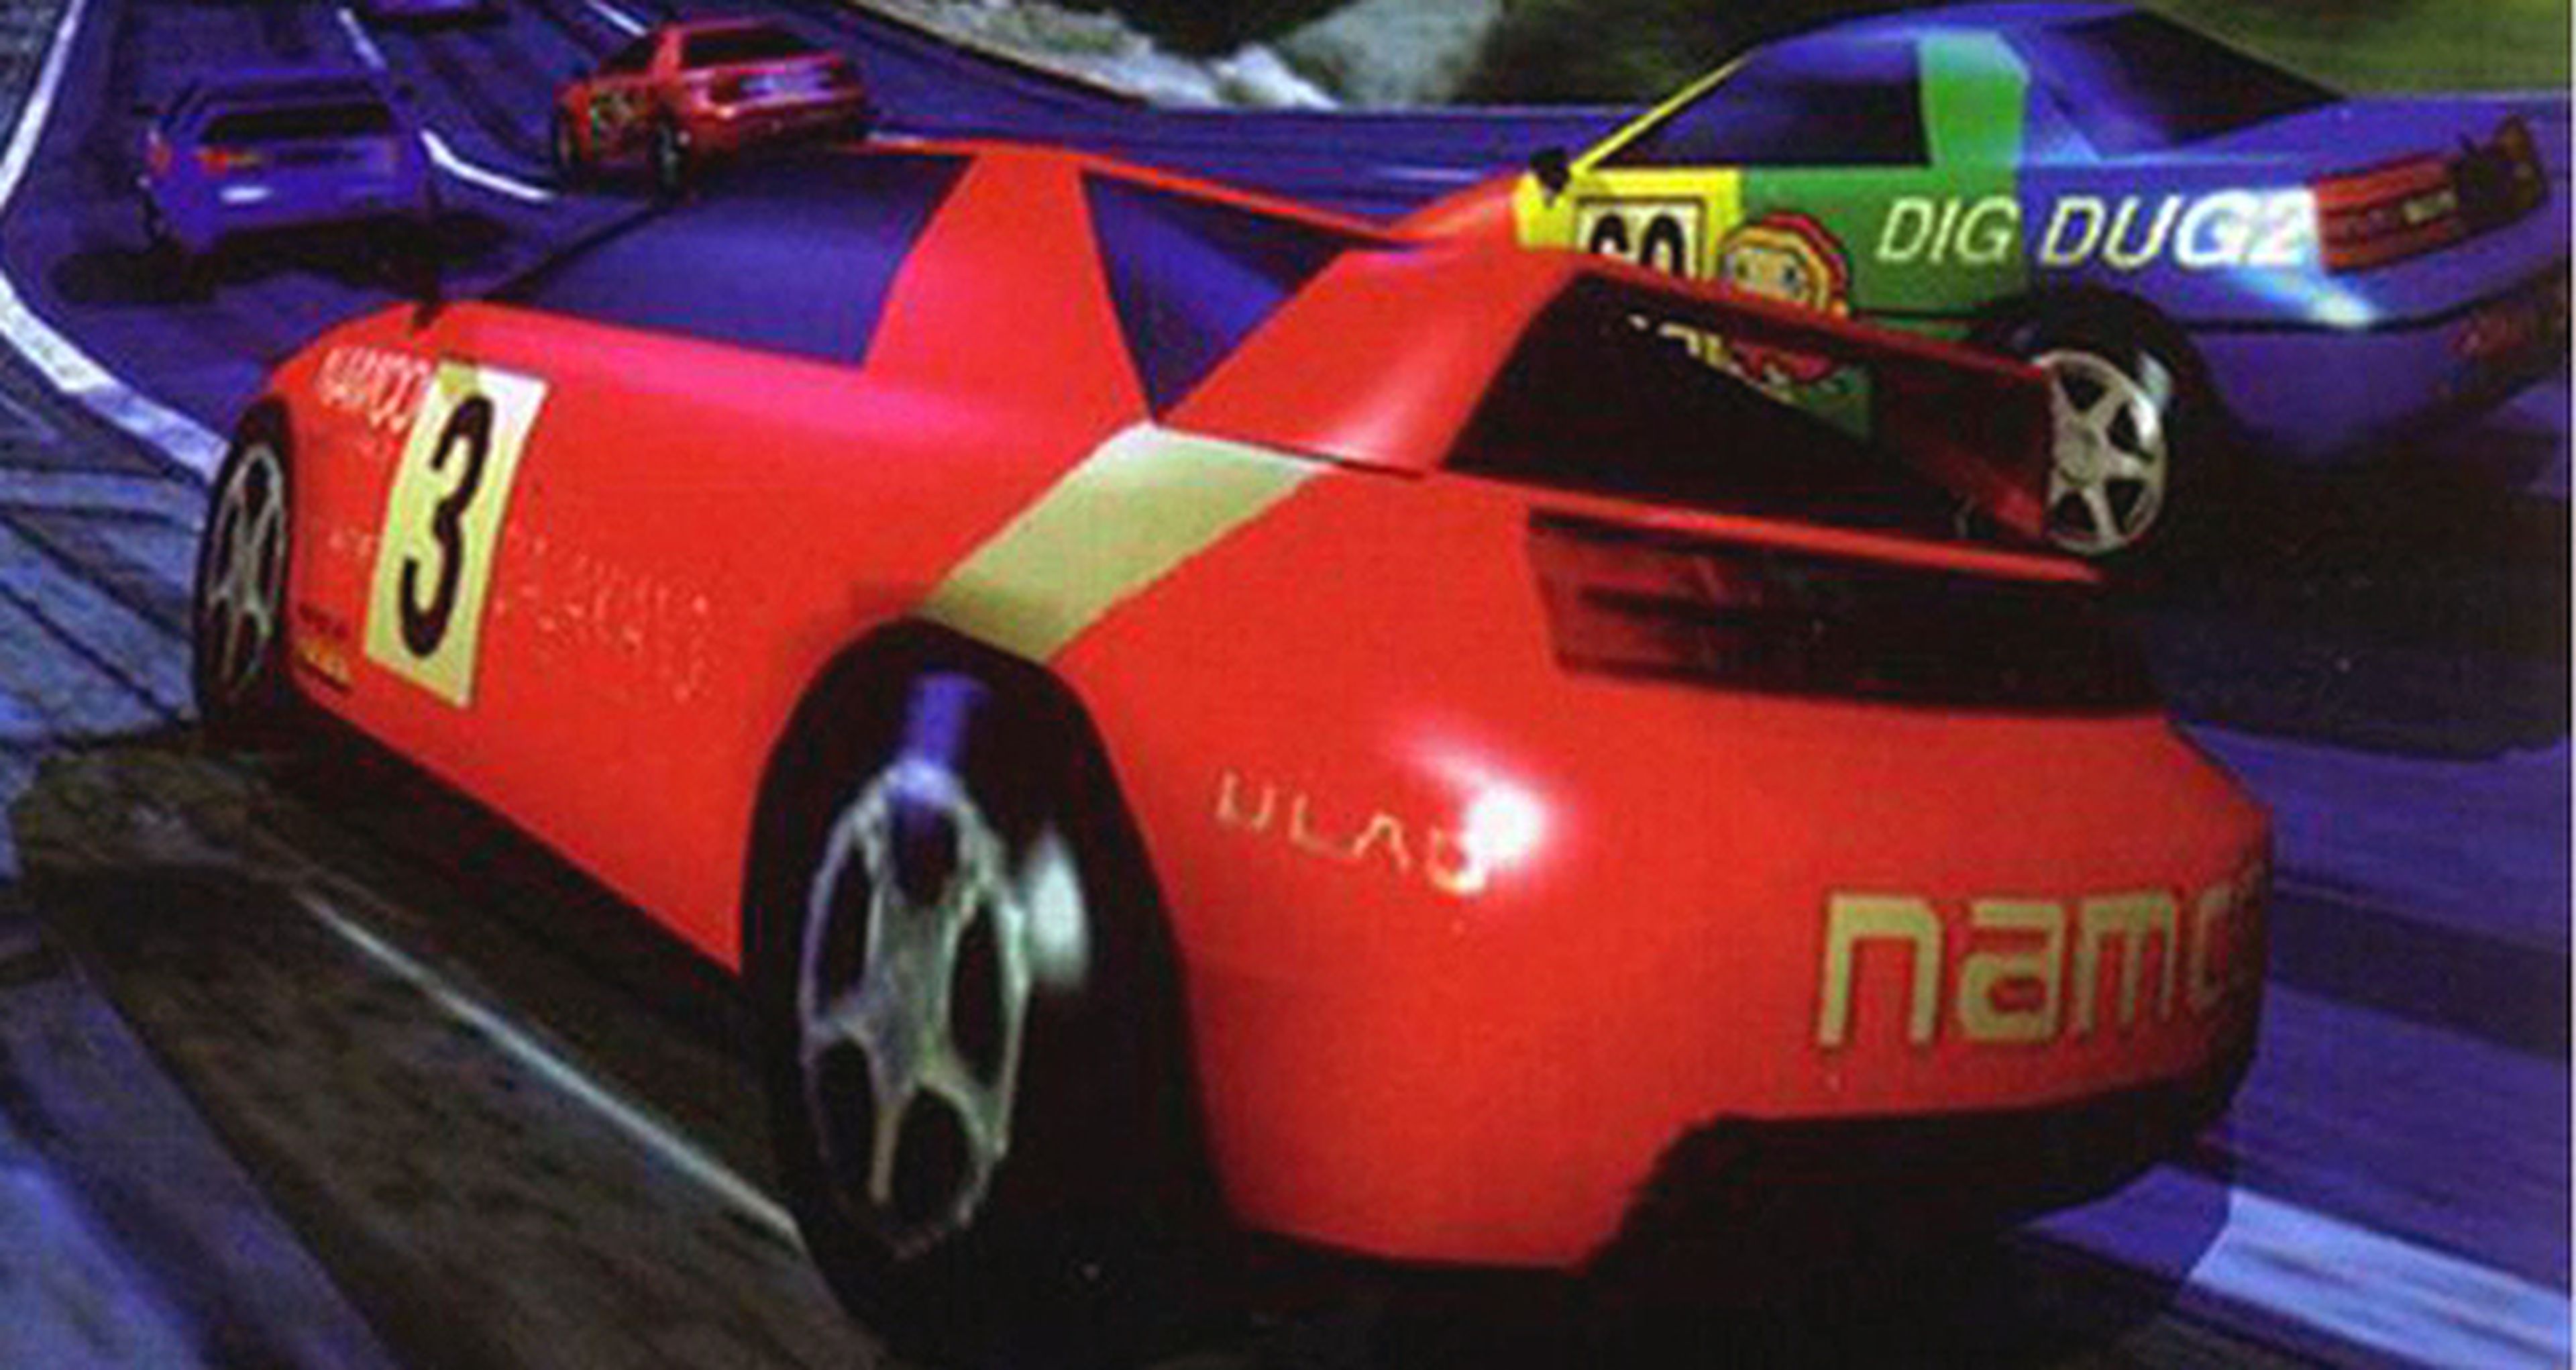 Hobby Consolas, hace 20 años: Ridge Racer